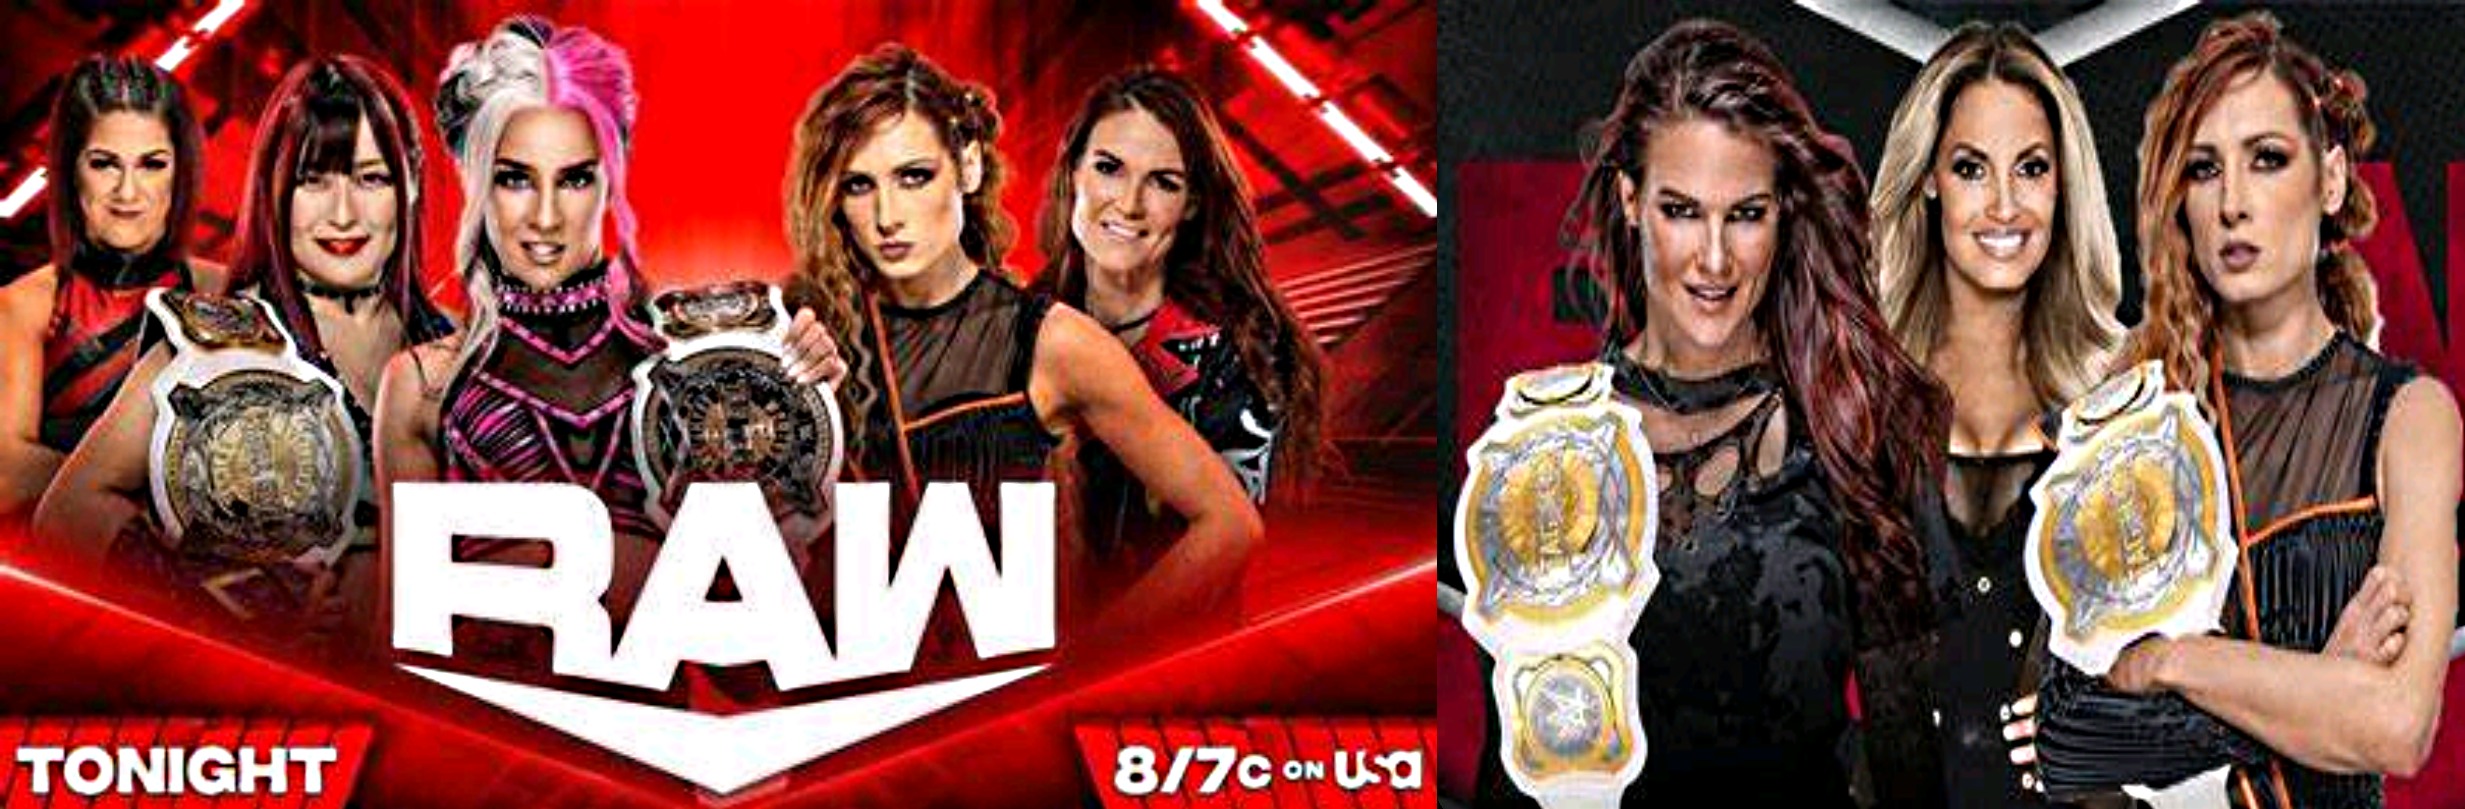 Lita, Trish & Becky tag champs 2.jpg